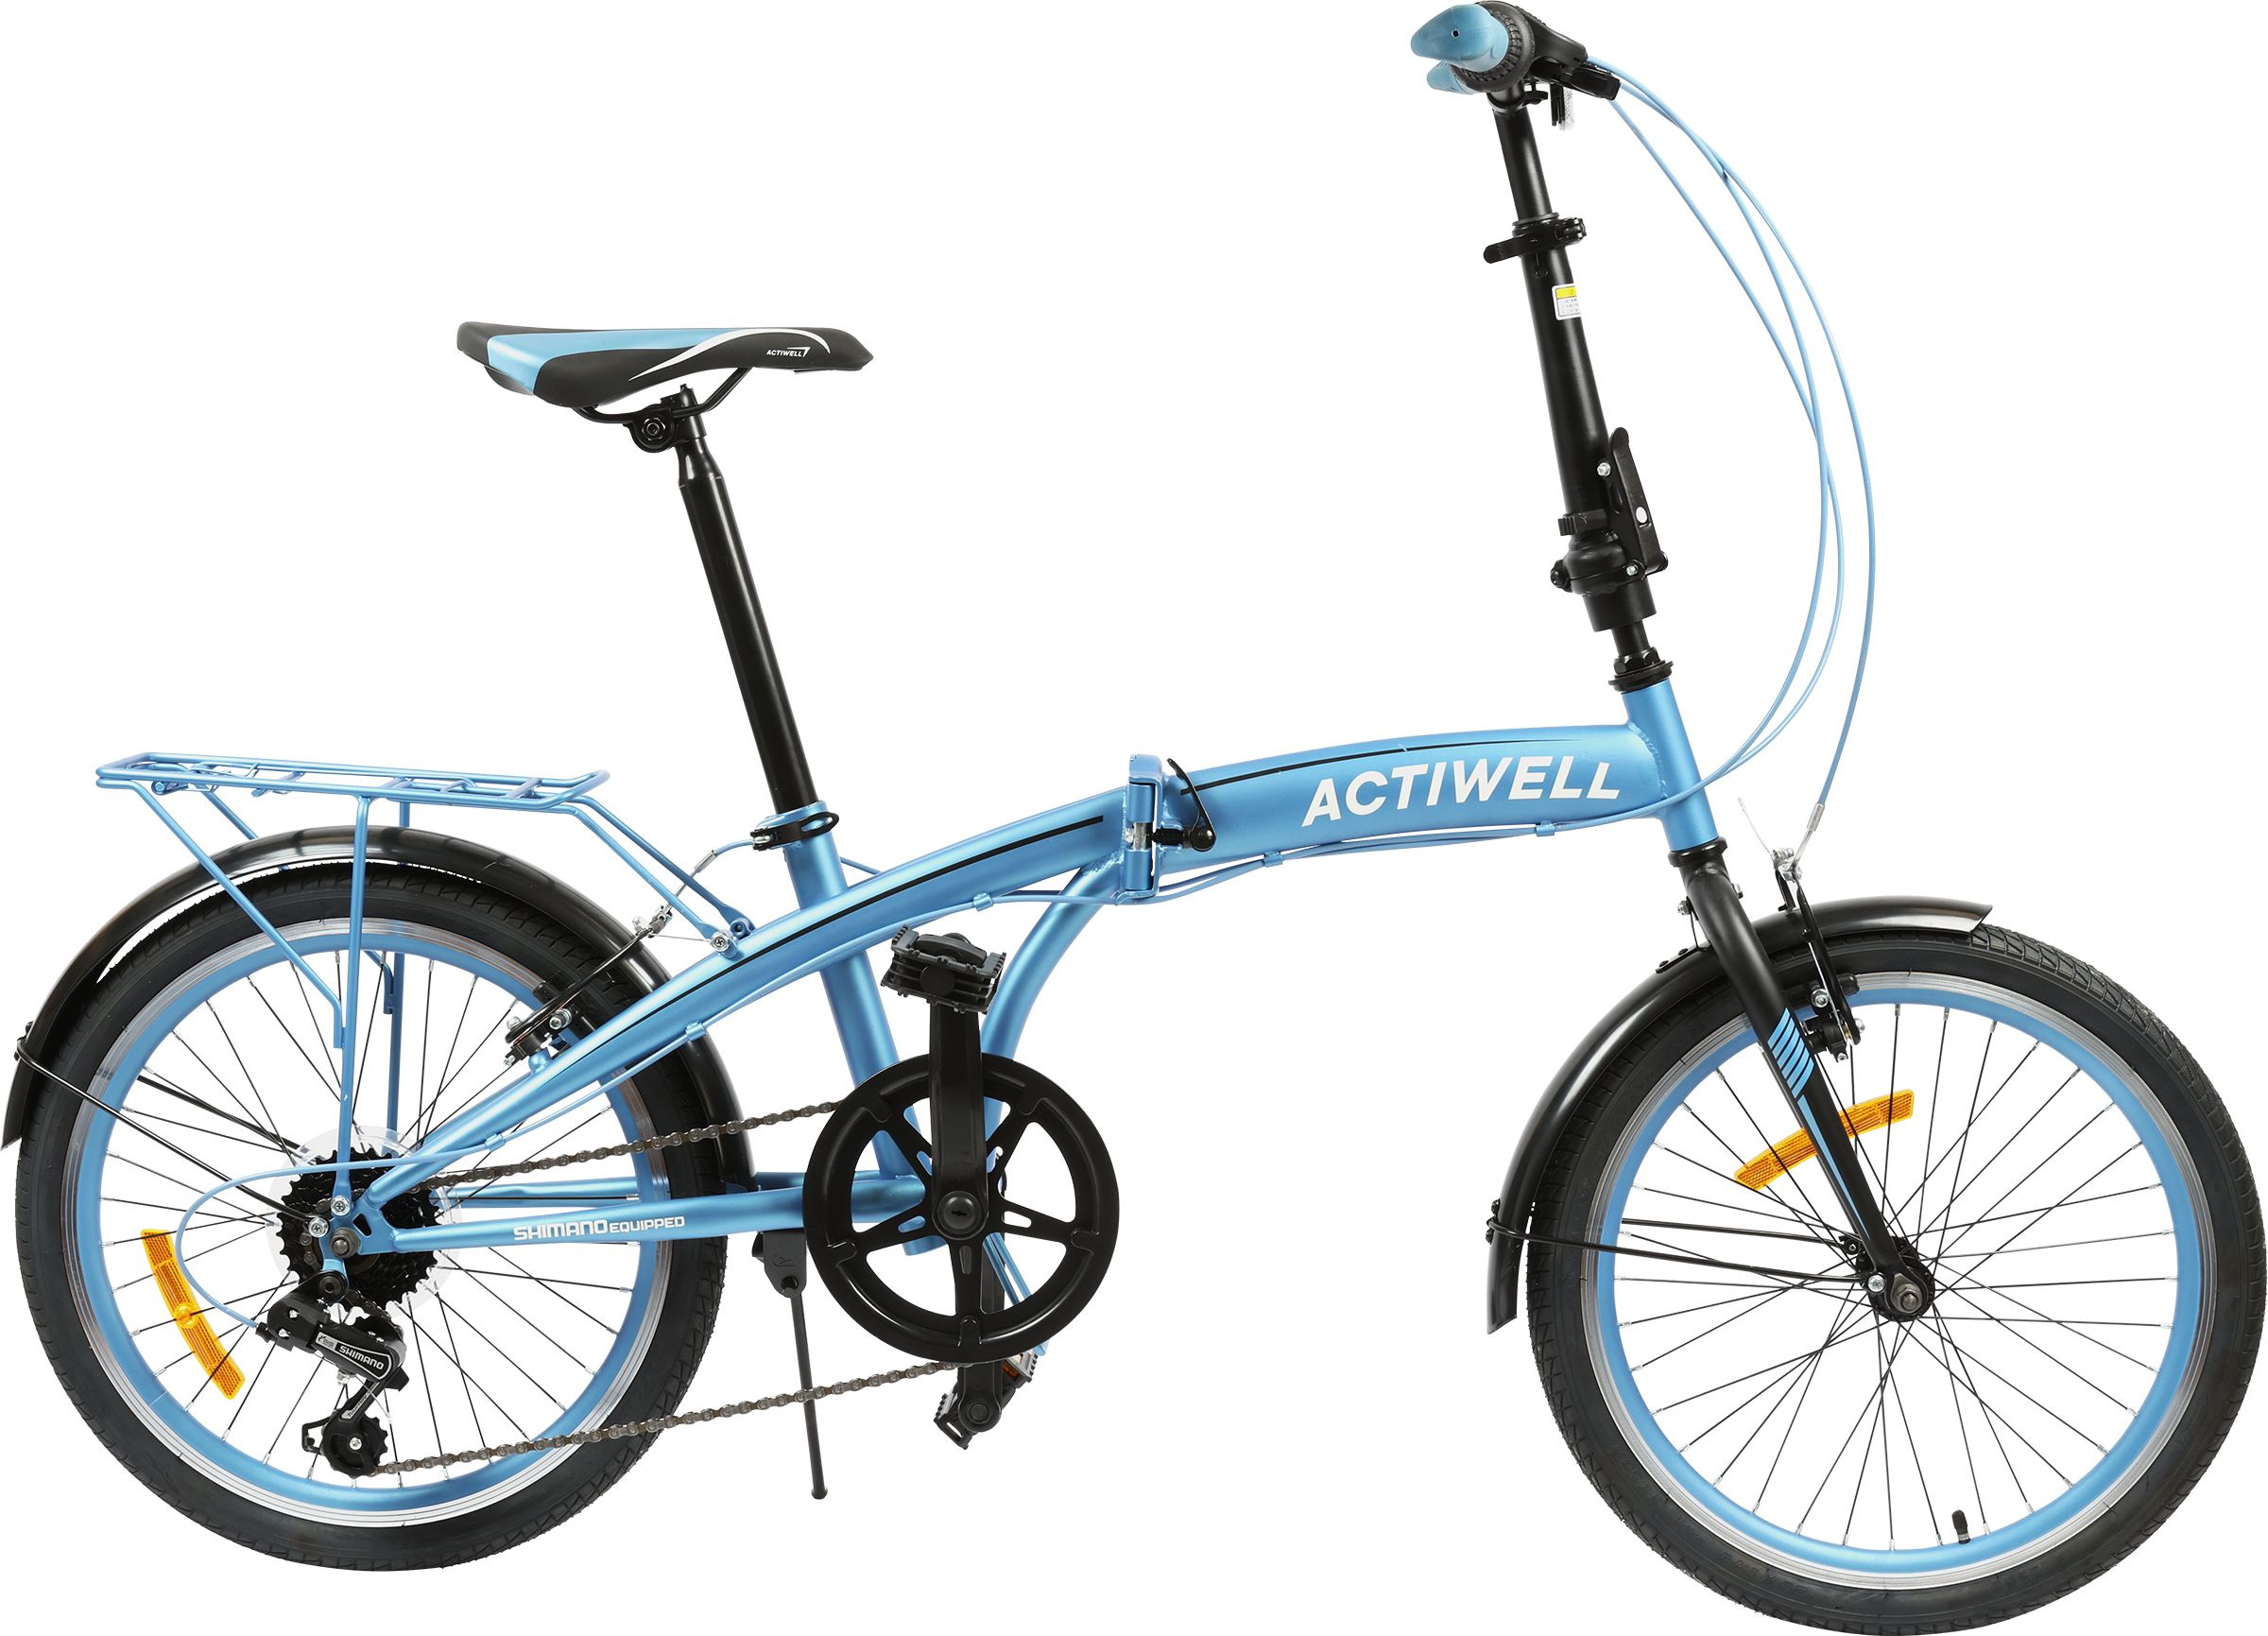 Велосипед городской детский Actiwell Planet складной голубой